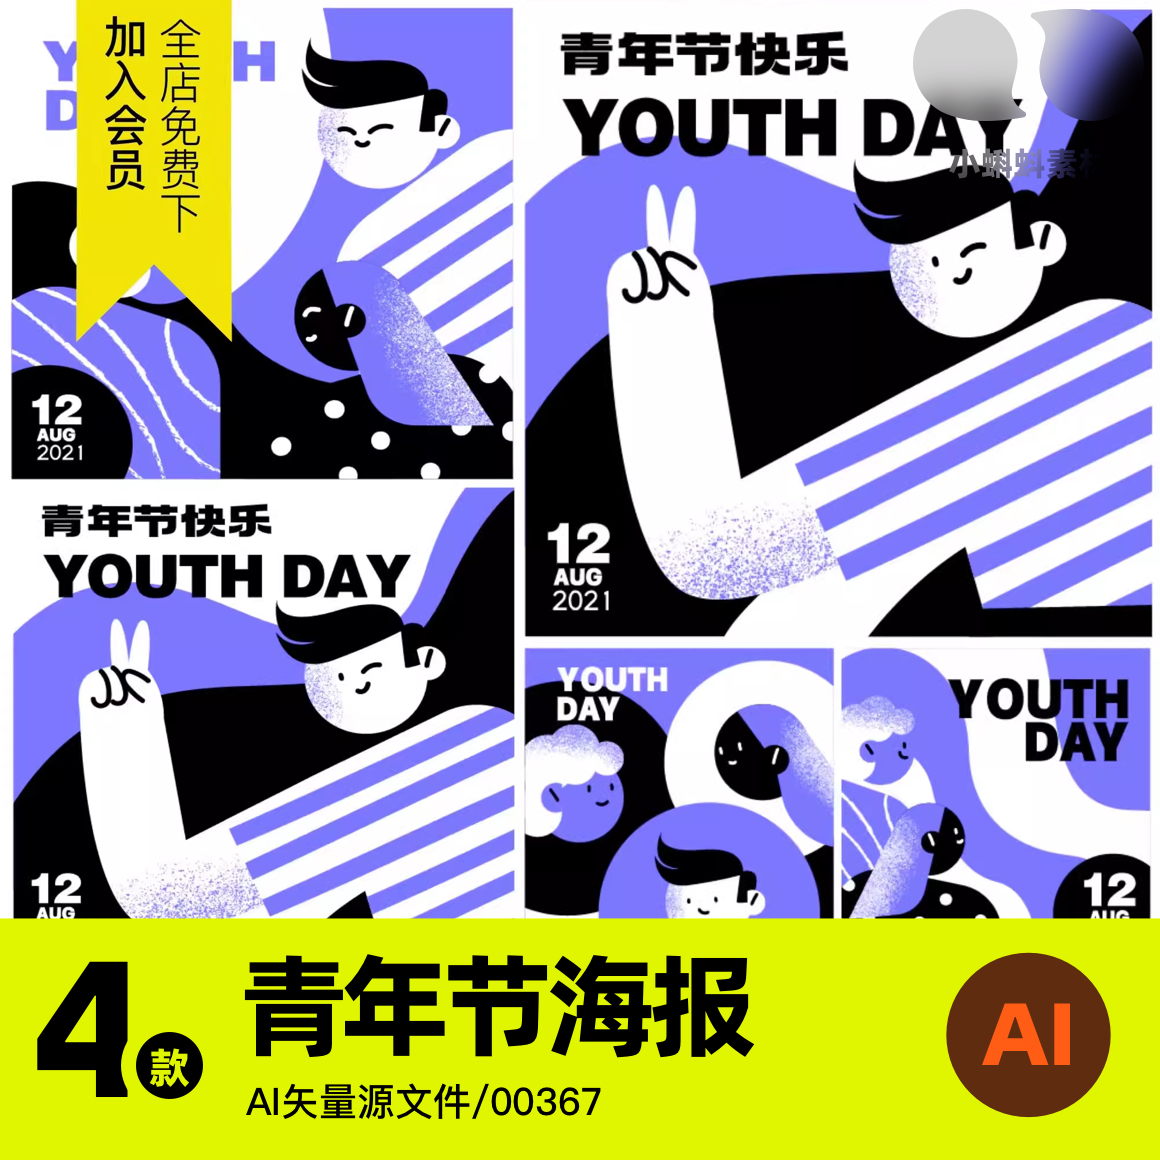 潮流颗粒人物插画54青年节海报模板趣味艺术音乐派AI矢量设计素材